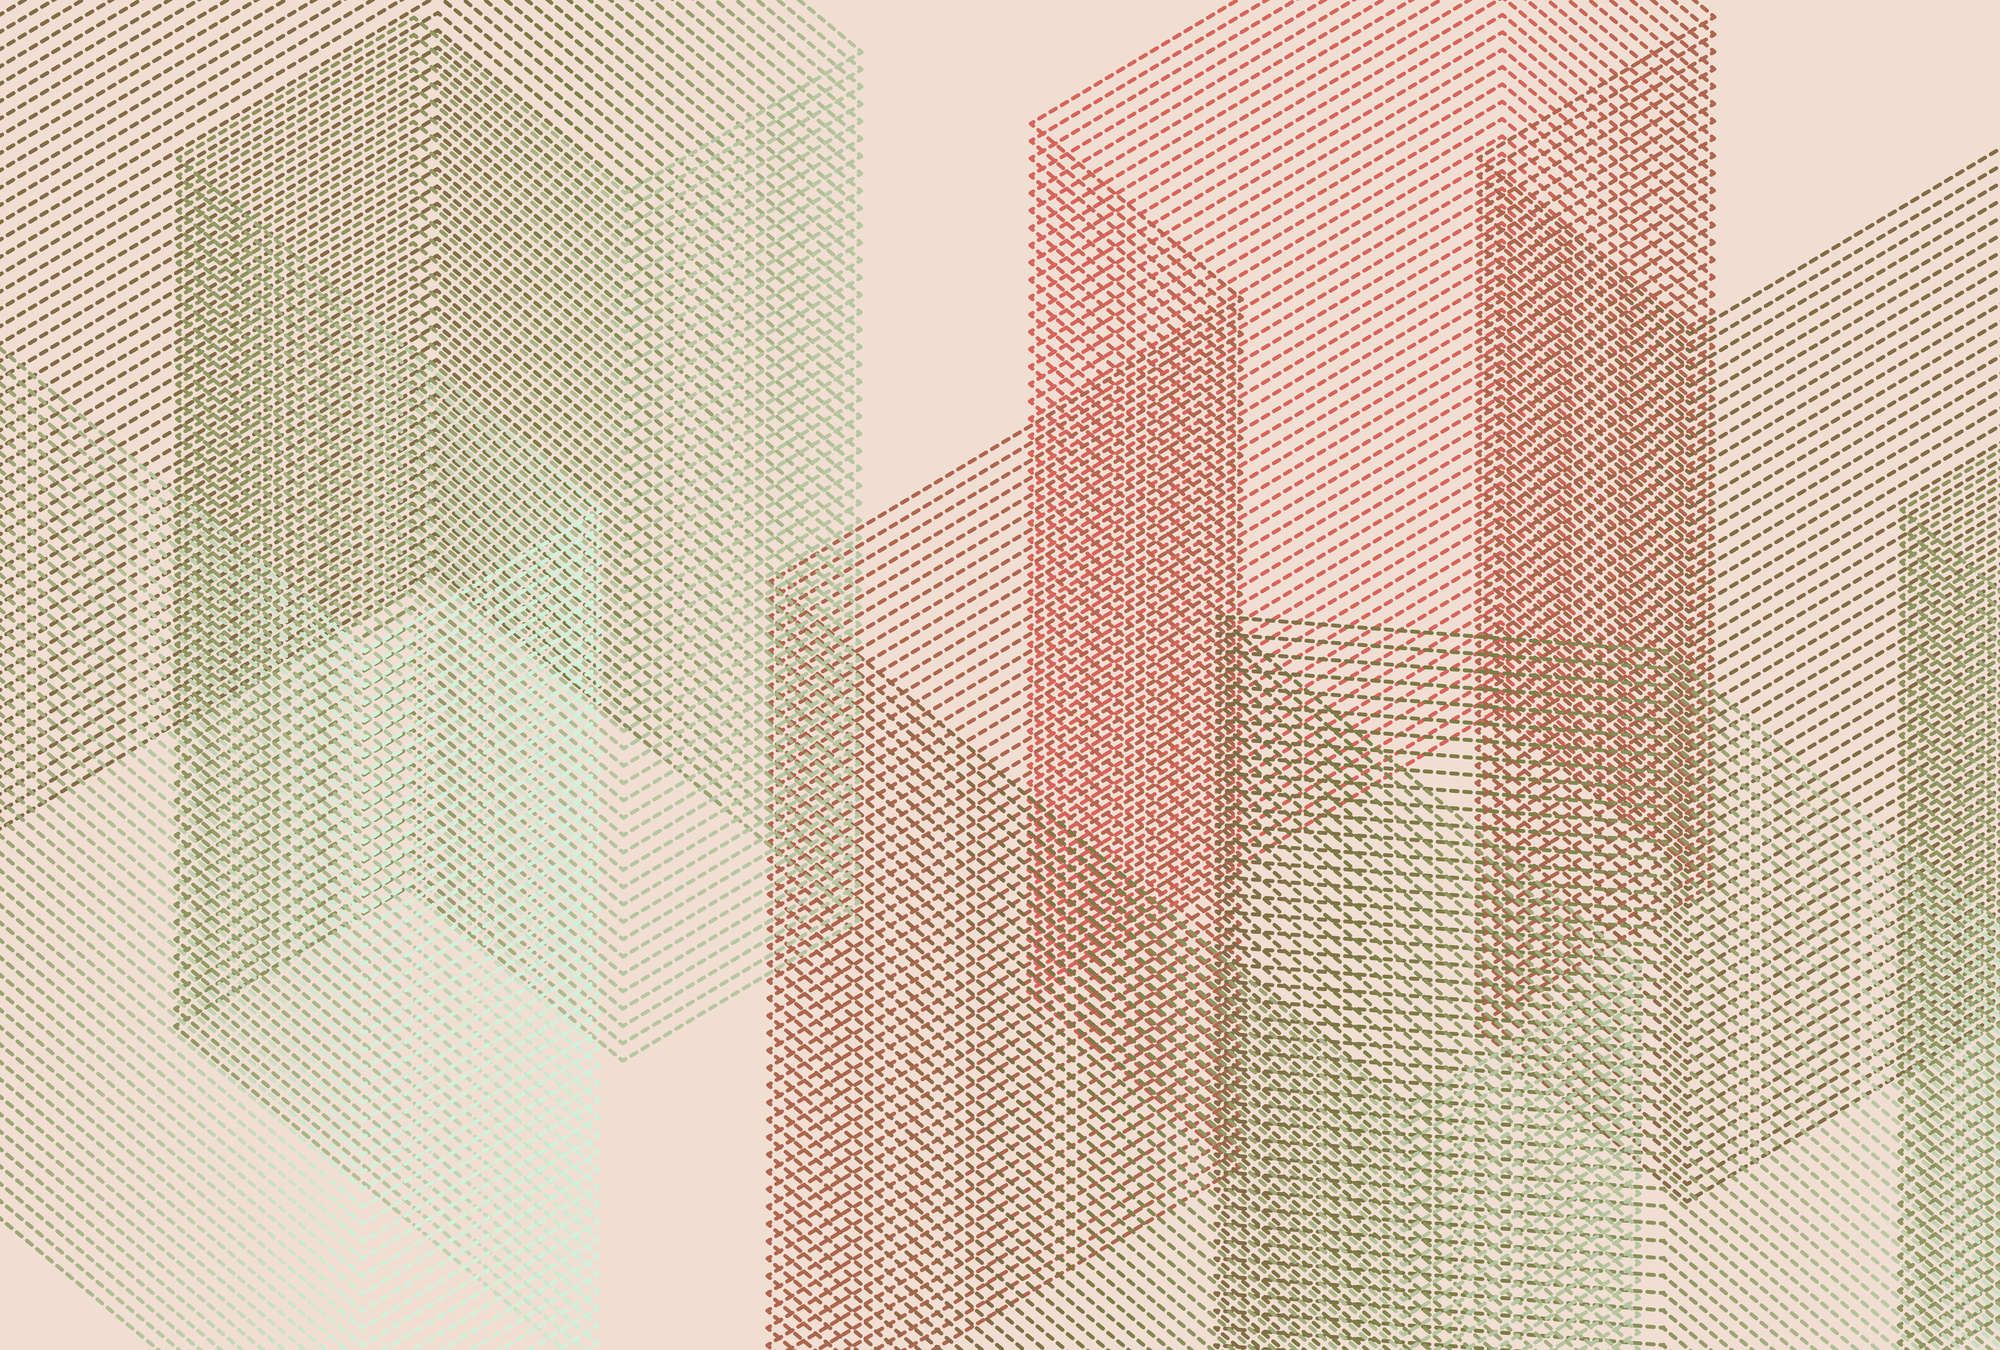             Digital behang »mesh 2« - Abstract 3D ontwerp - Rood, groen | Gladde, licht parelmoerachtige vliesstof
        